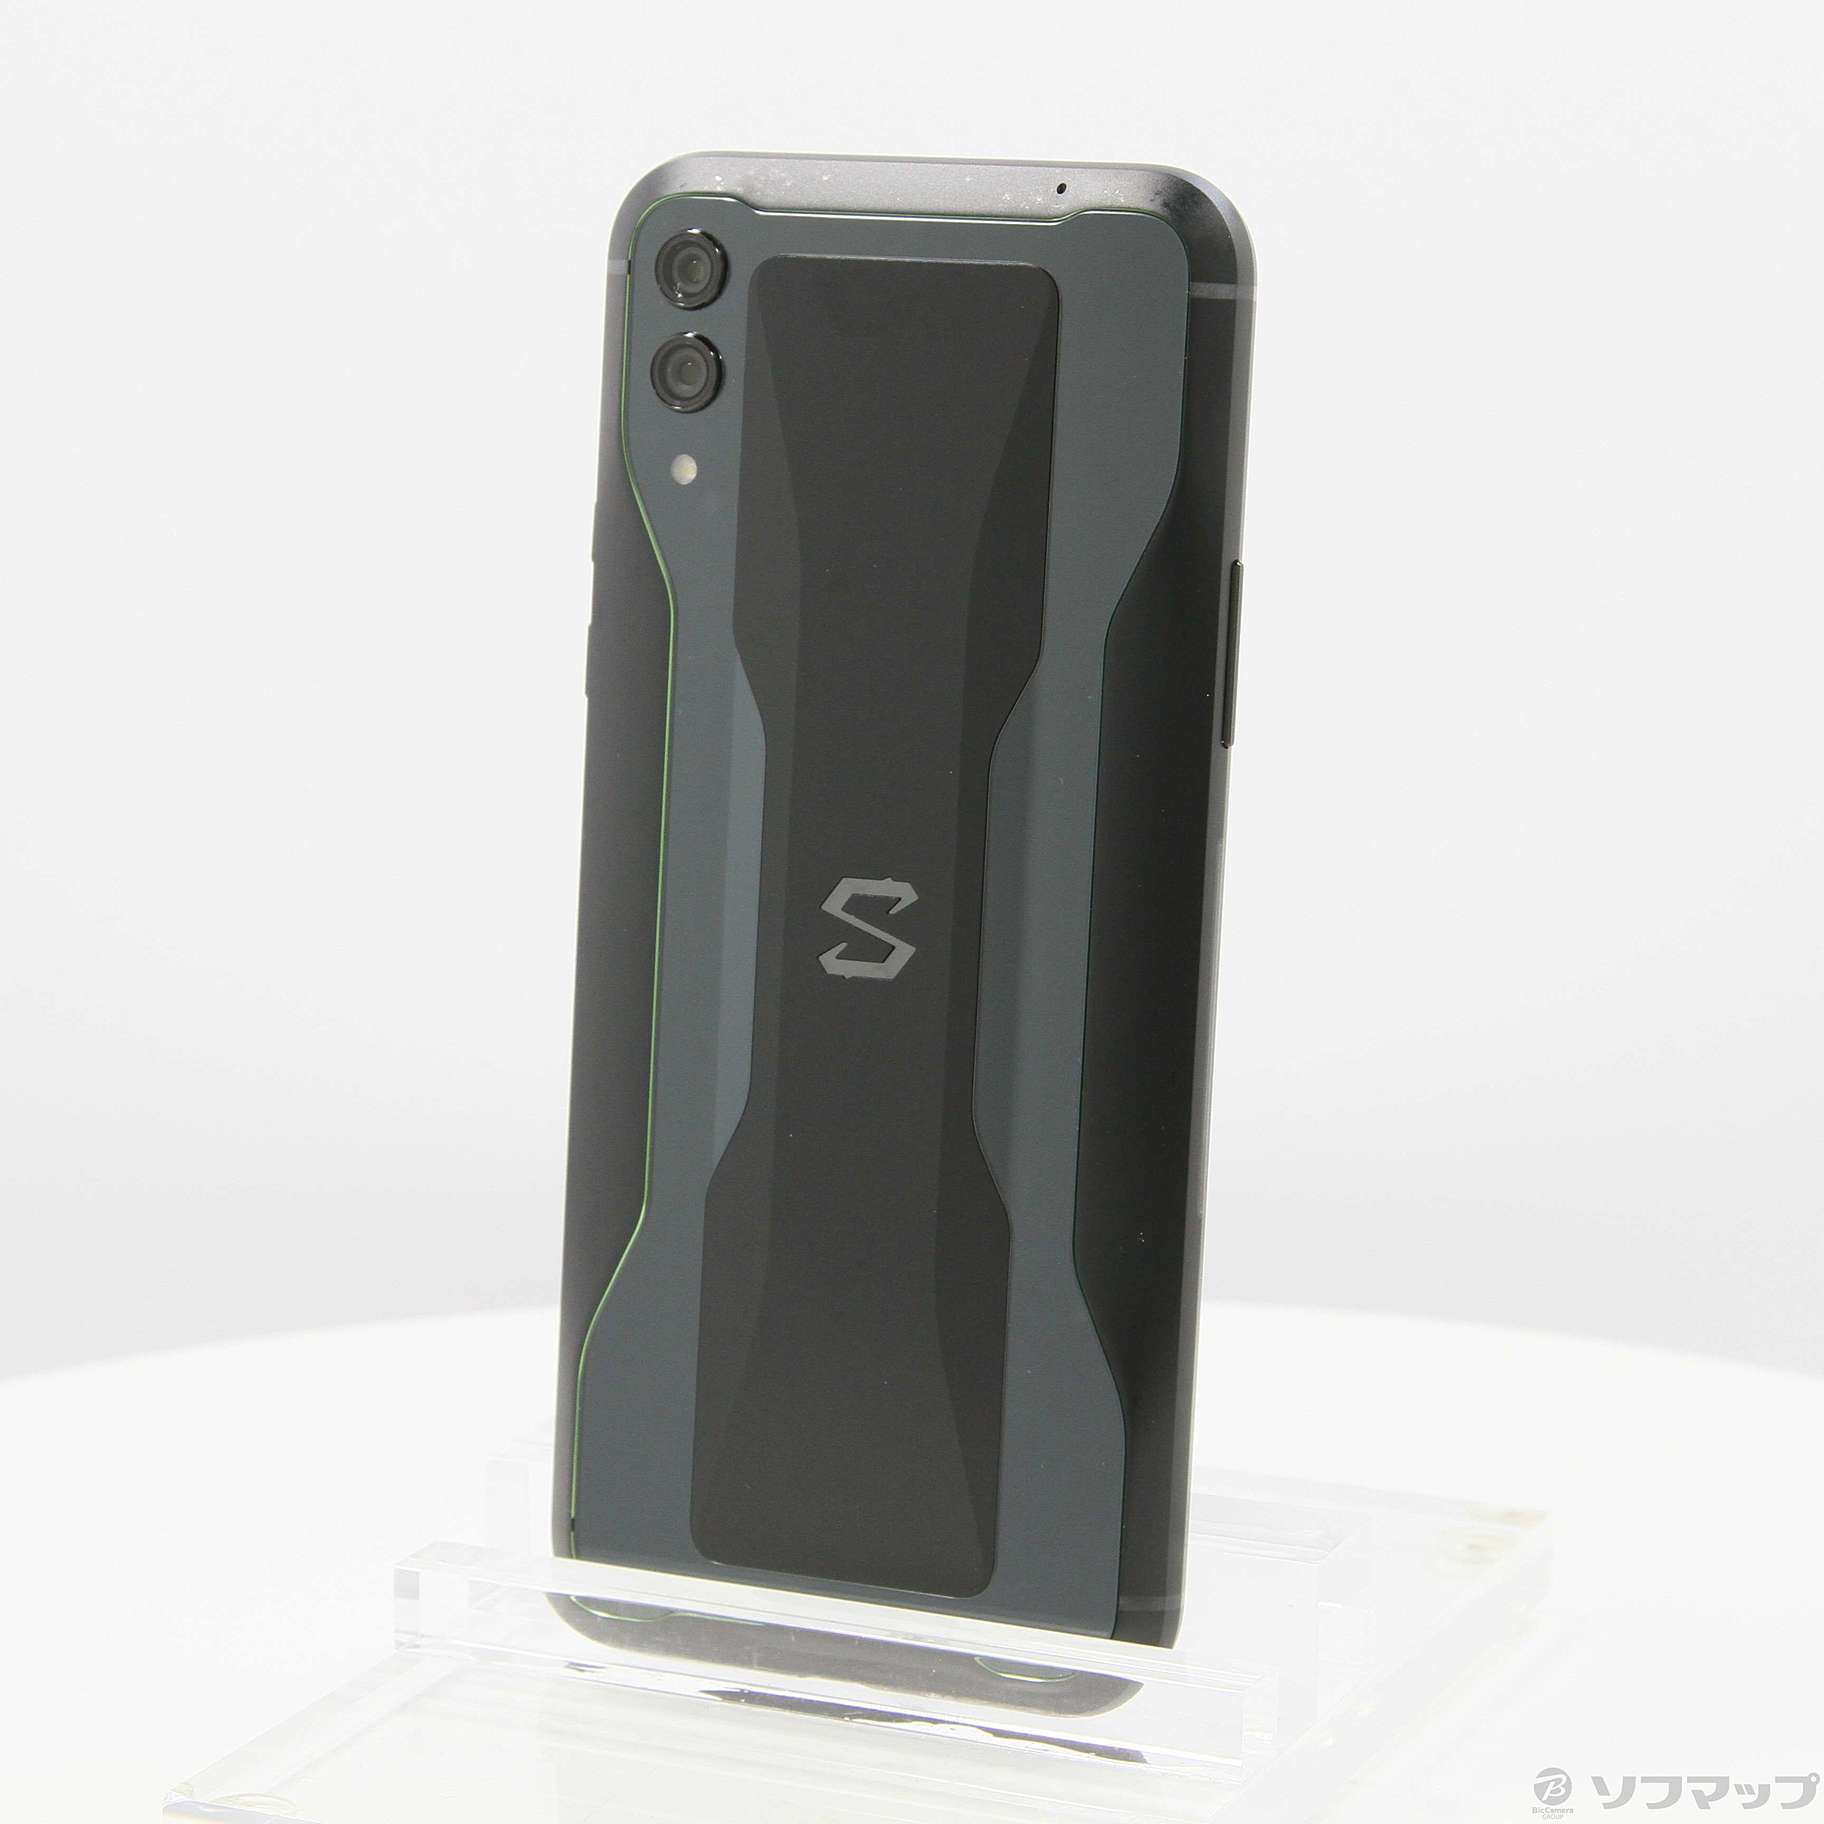 中古】Black Shark 2 256GB シャドーブラック SKW-H0 SIMフリー ...